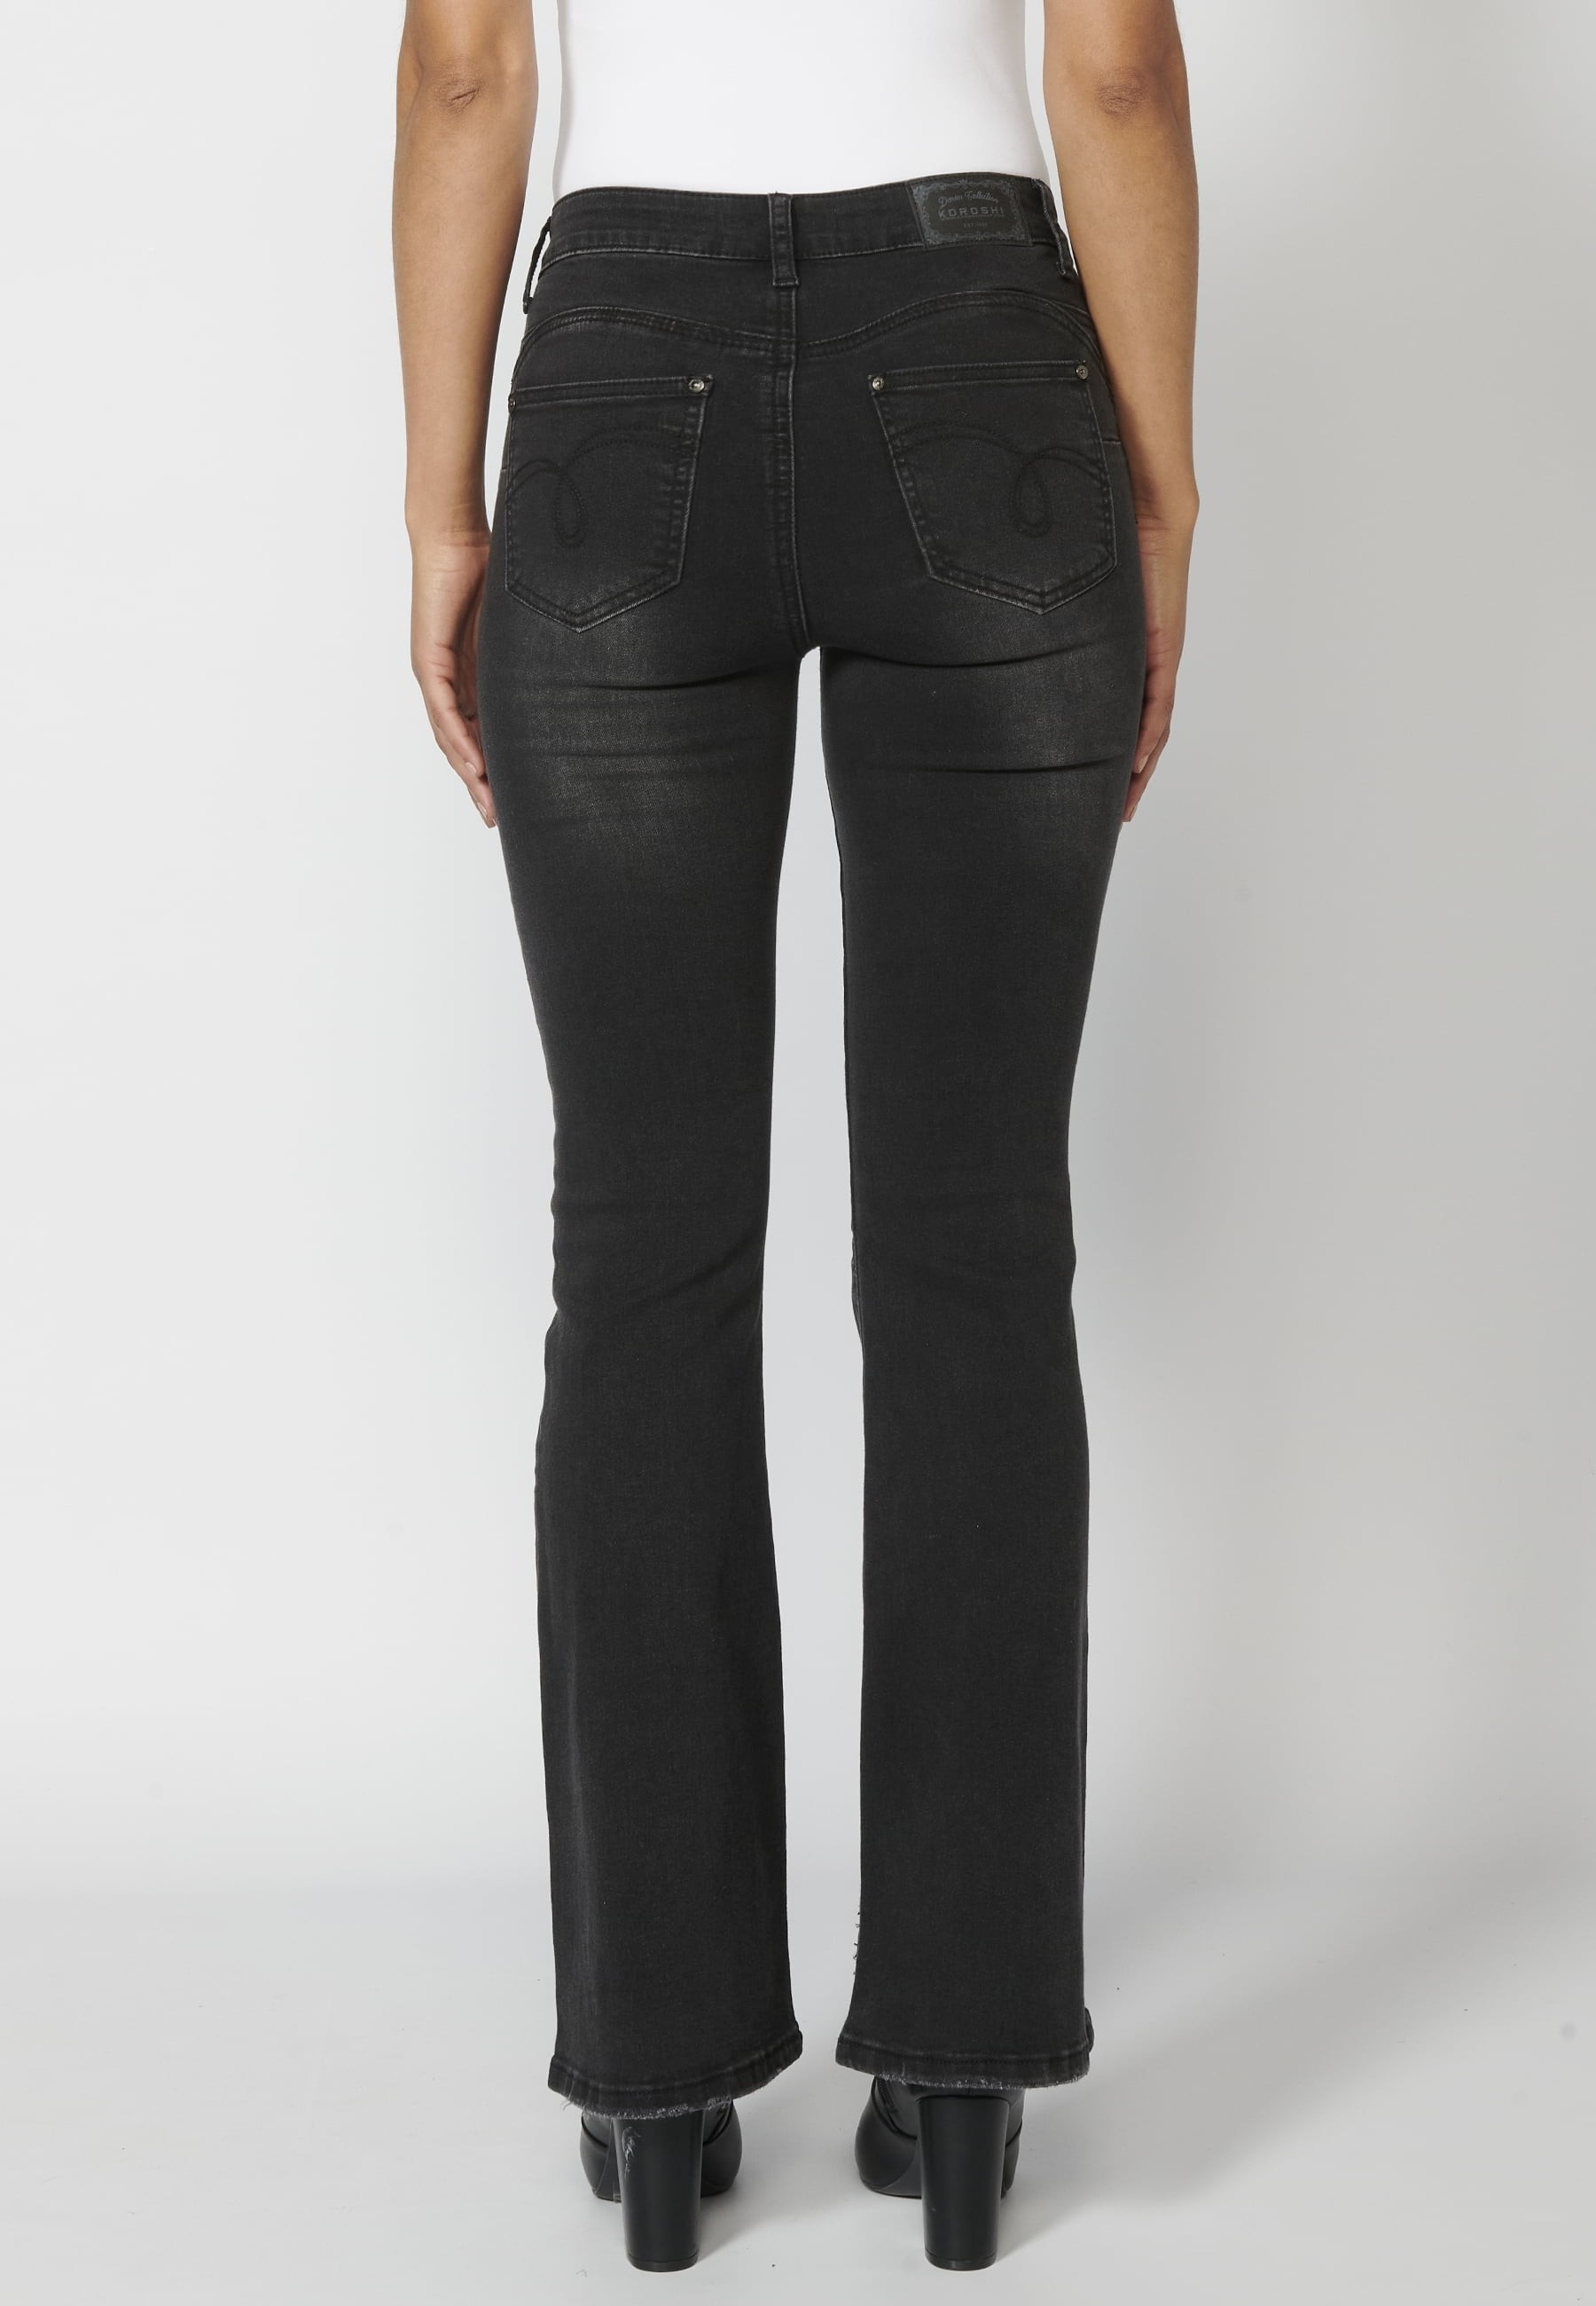 Pantalon long en jean avec détails dans les poches de couleur Noir pour Femme